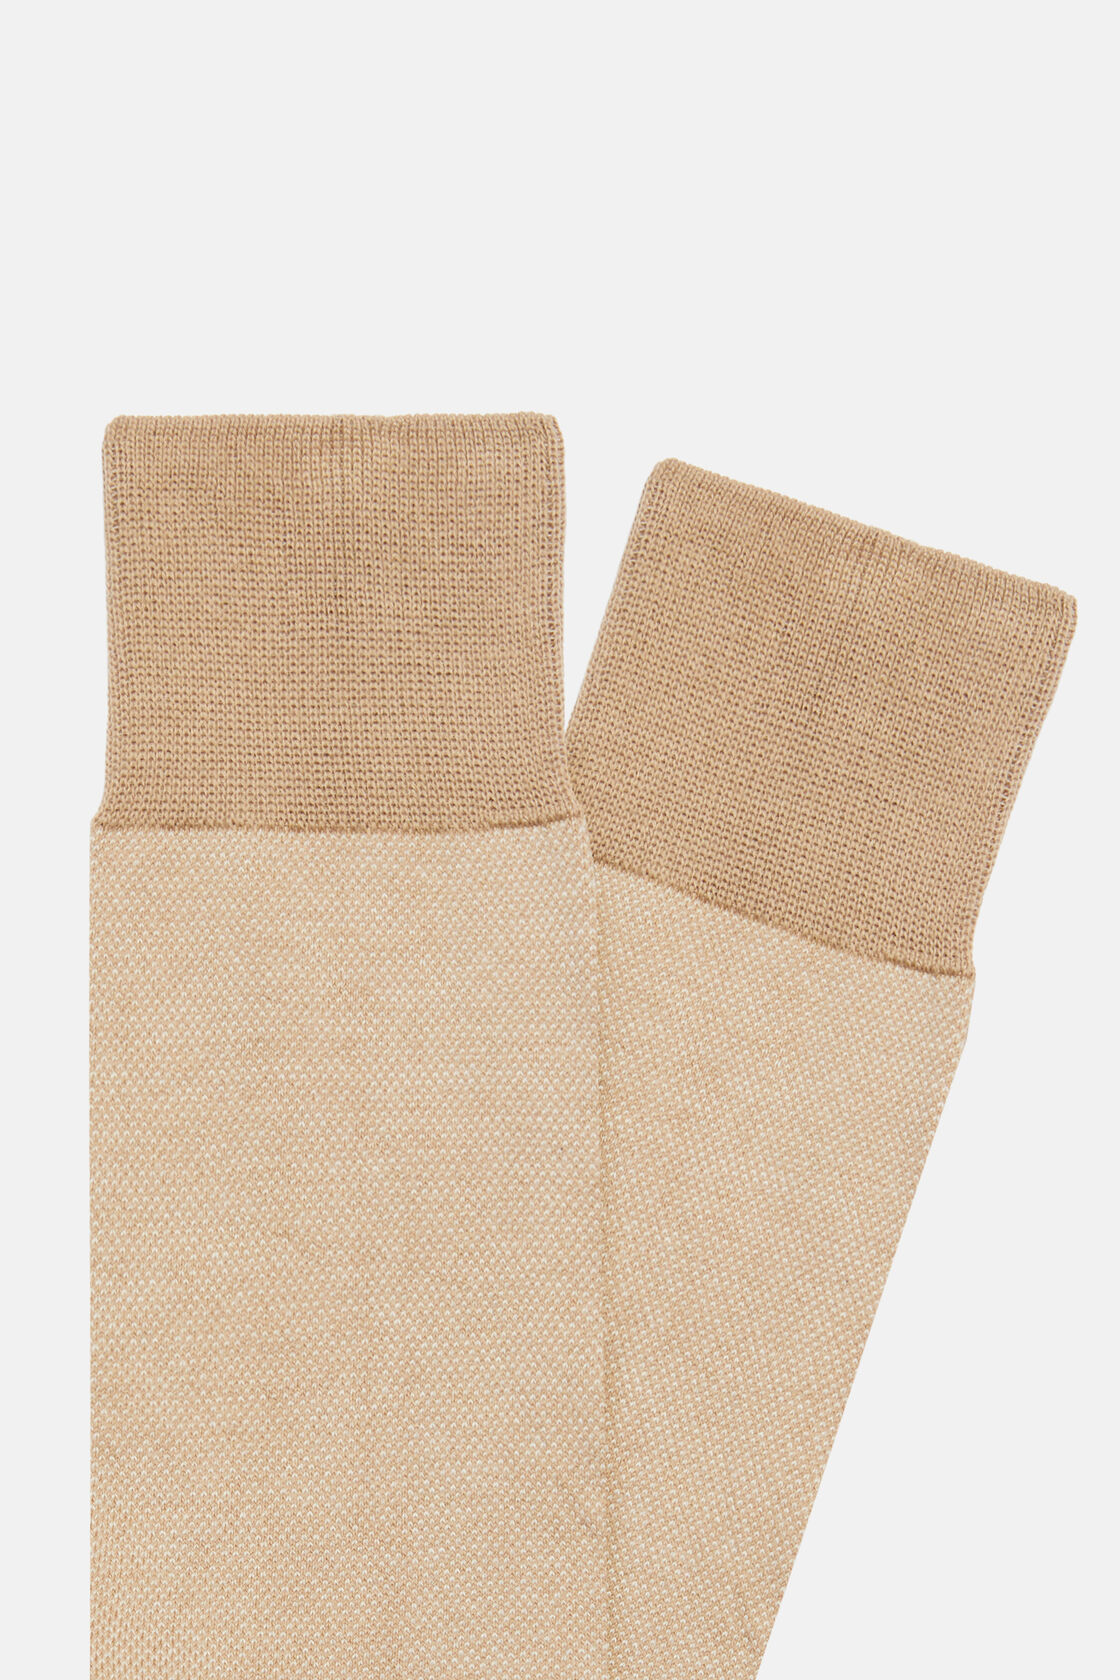 Κάλτσες Oxford από βαμβάκι, Beige, hi-res